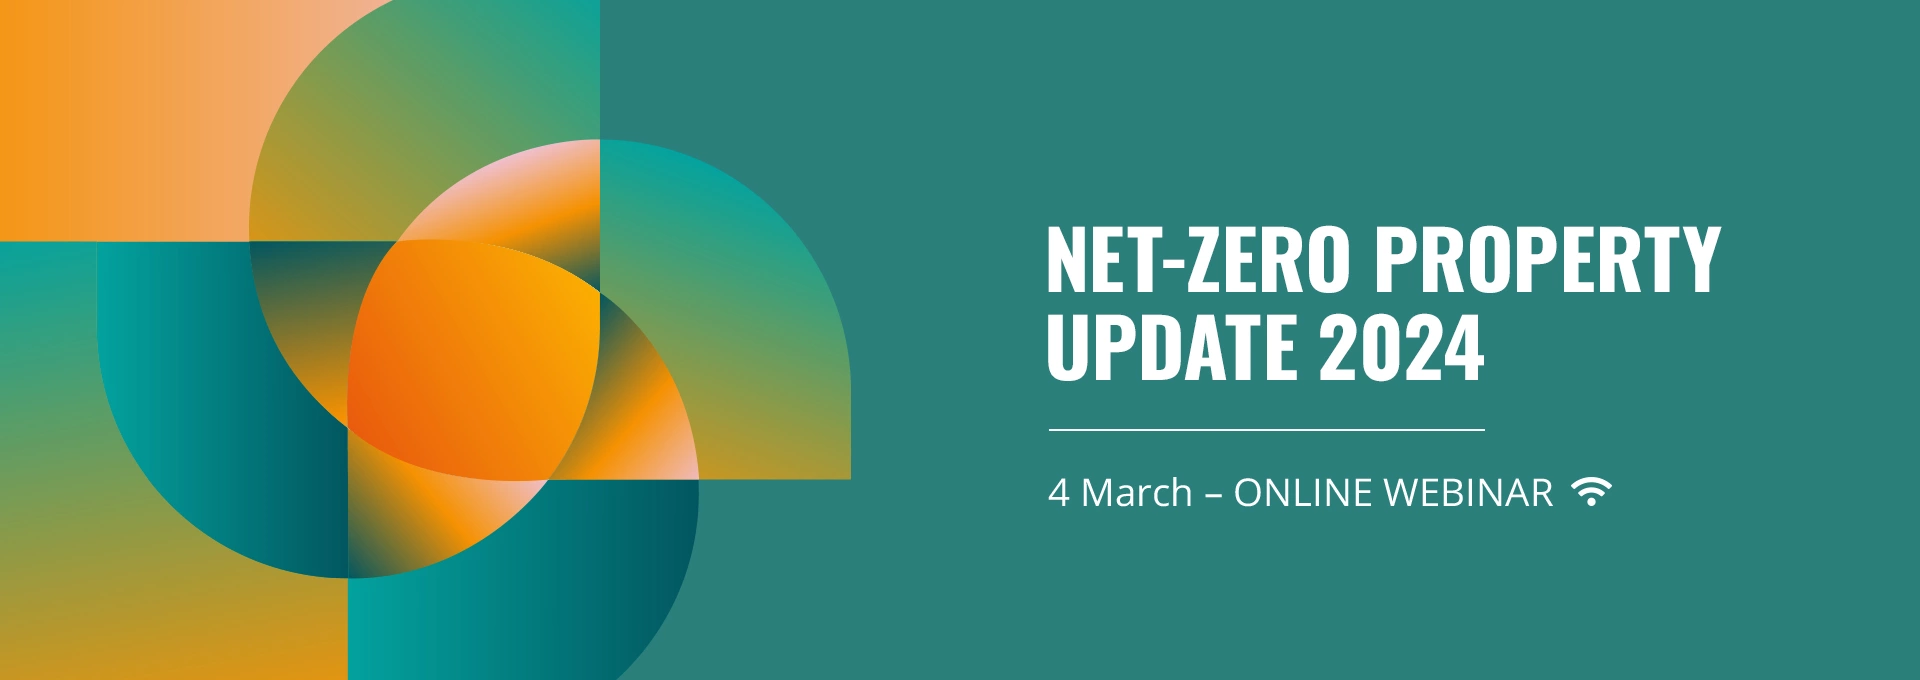 Net-Zero Property Update 2024 - Free Online Event